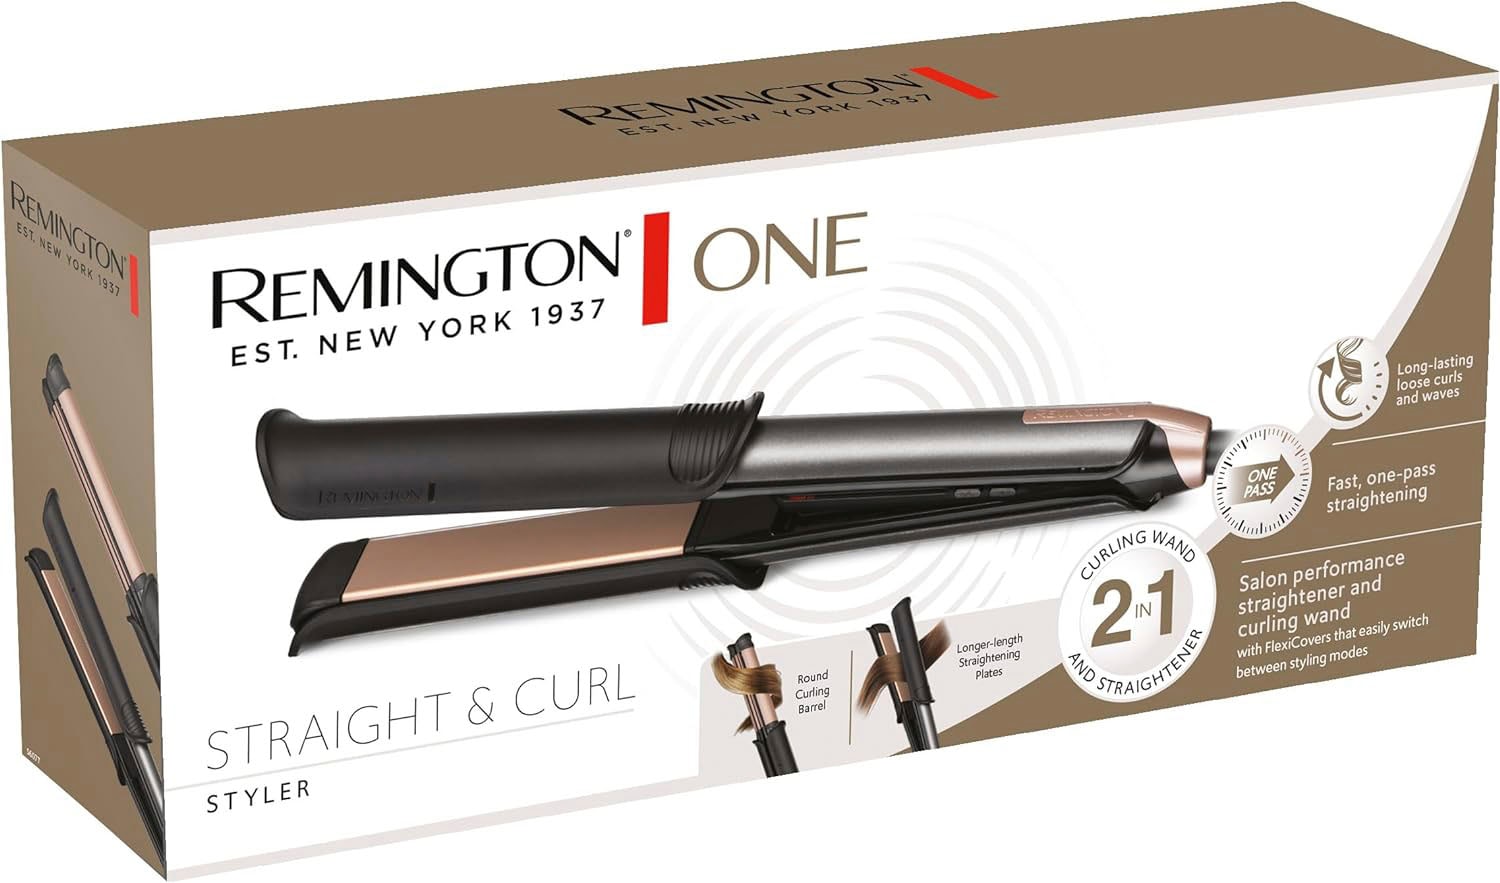 Remington Glätteisen »S6077 ONE Straight & Curl Styler«, 2in1 Styler,Glätt-/Lockenmodus mit zuschaltbarer beheizter Außenfläche